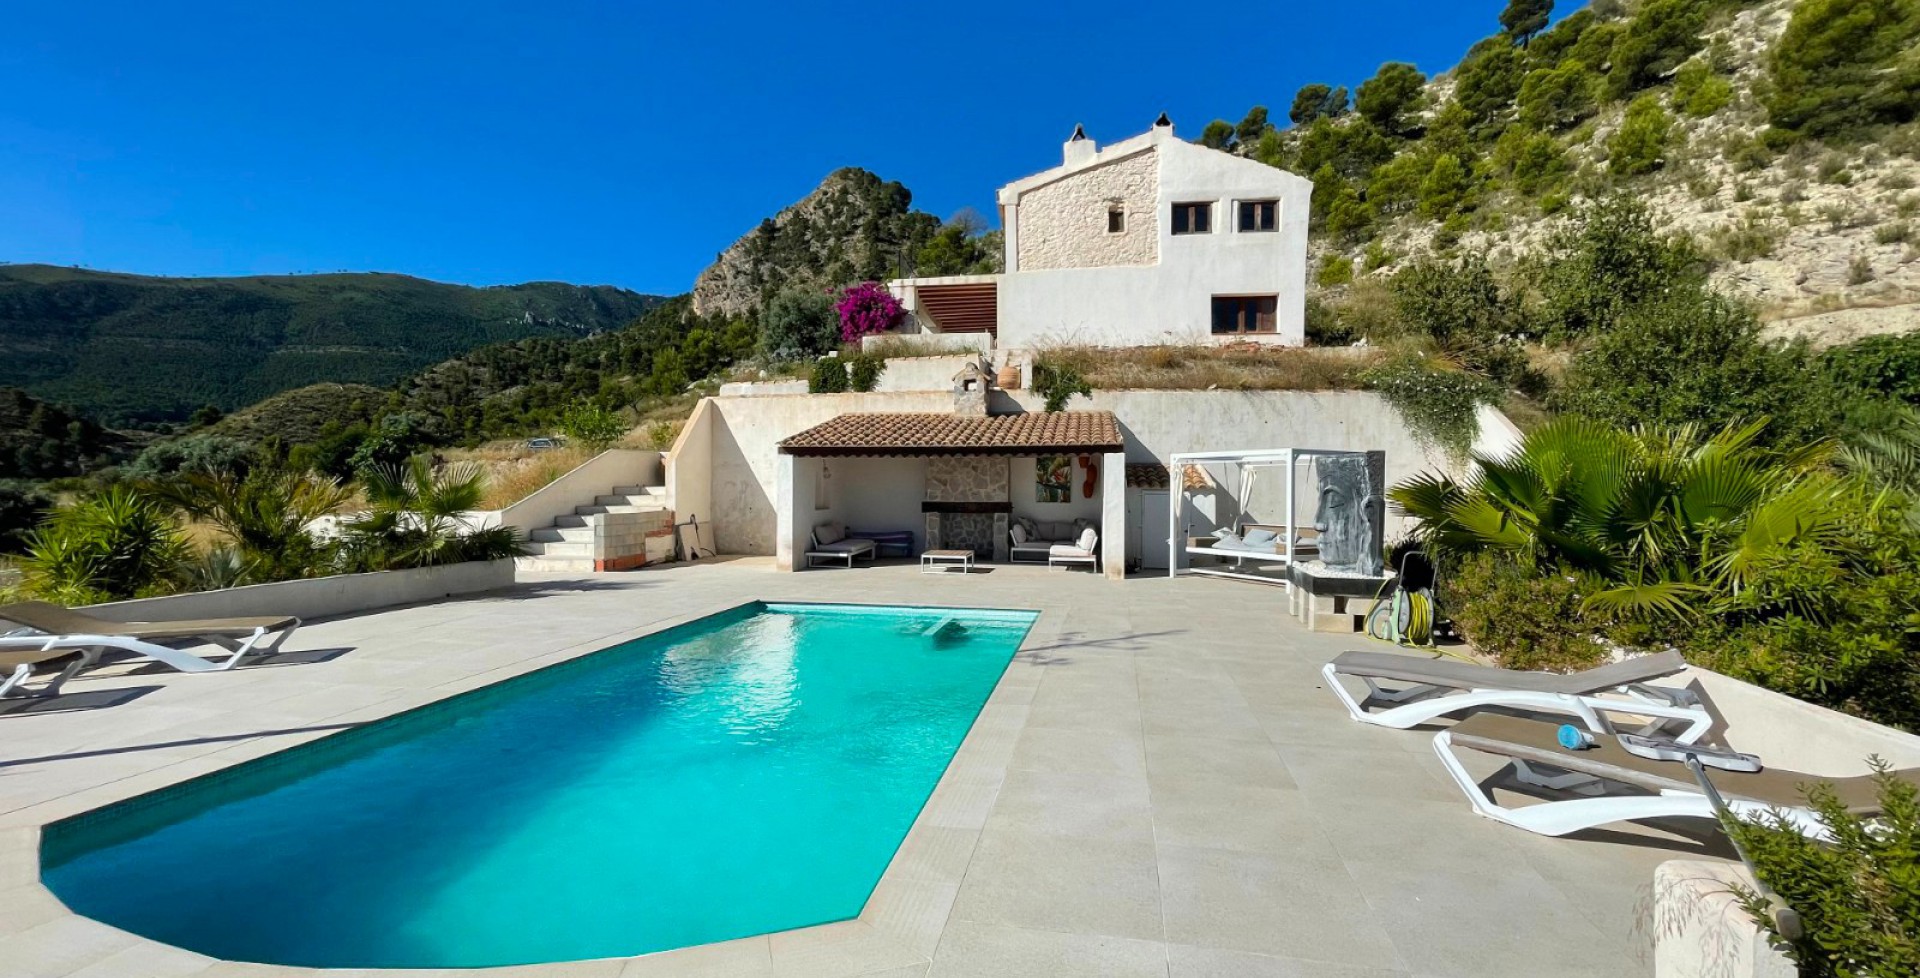 Espectacular casa de campo con amplia piscina , Ricote, Murcia, España